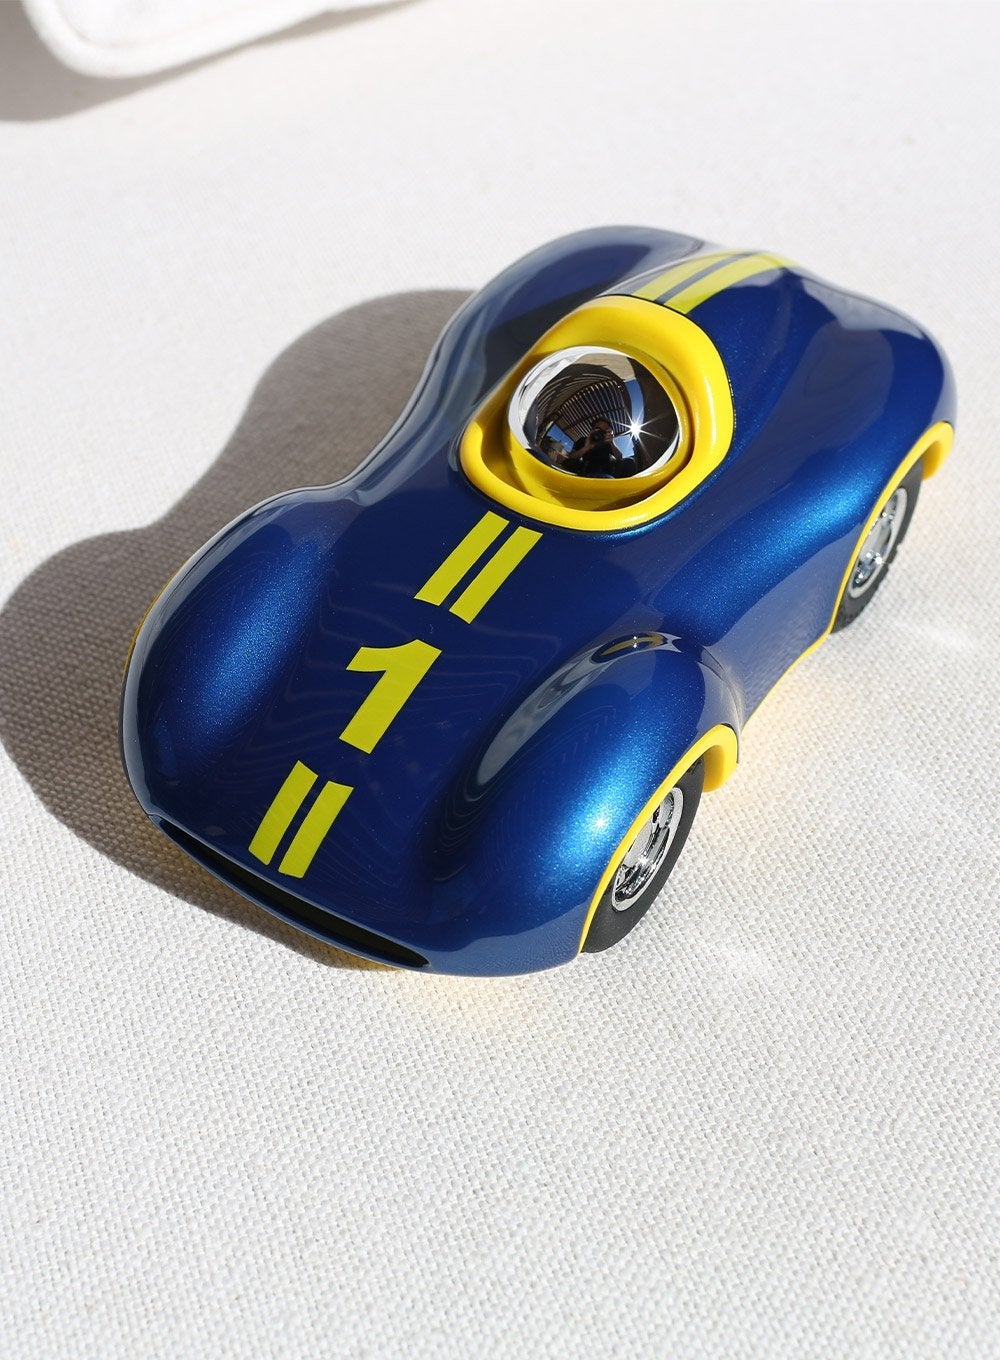 Playforever Toy Playforever 712 Speedy Le Mans Boy Toy Car